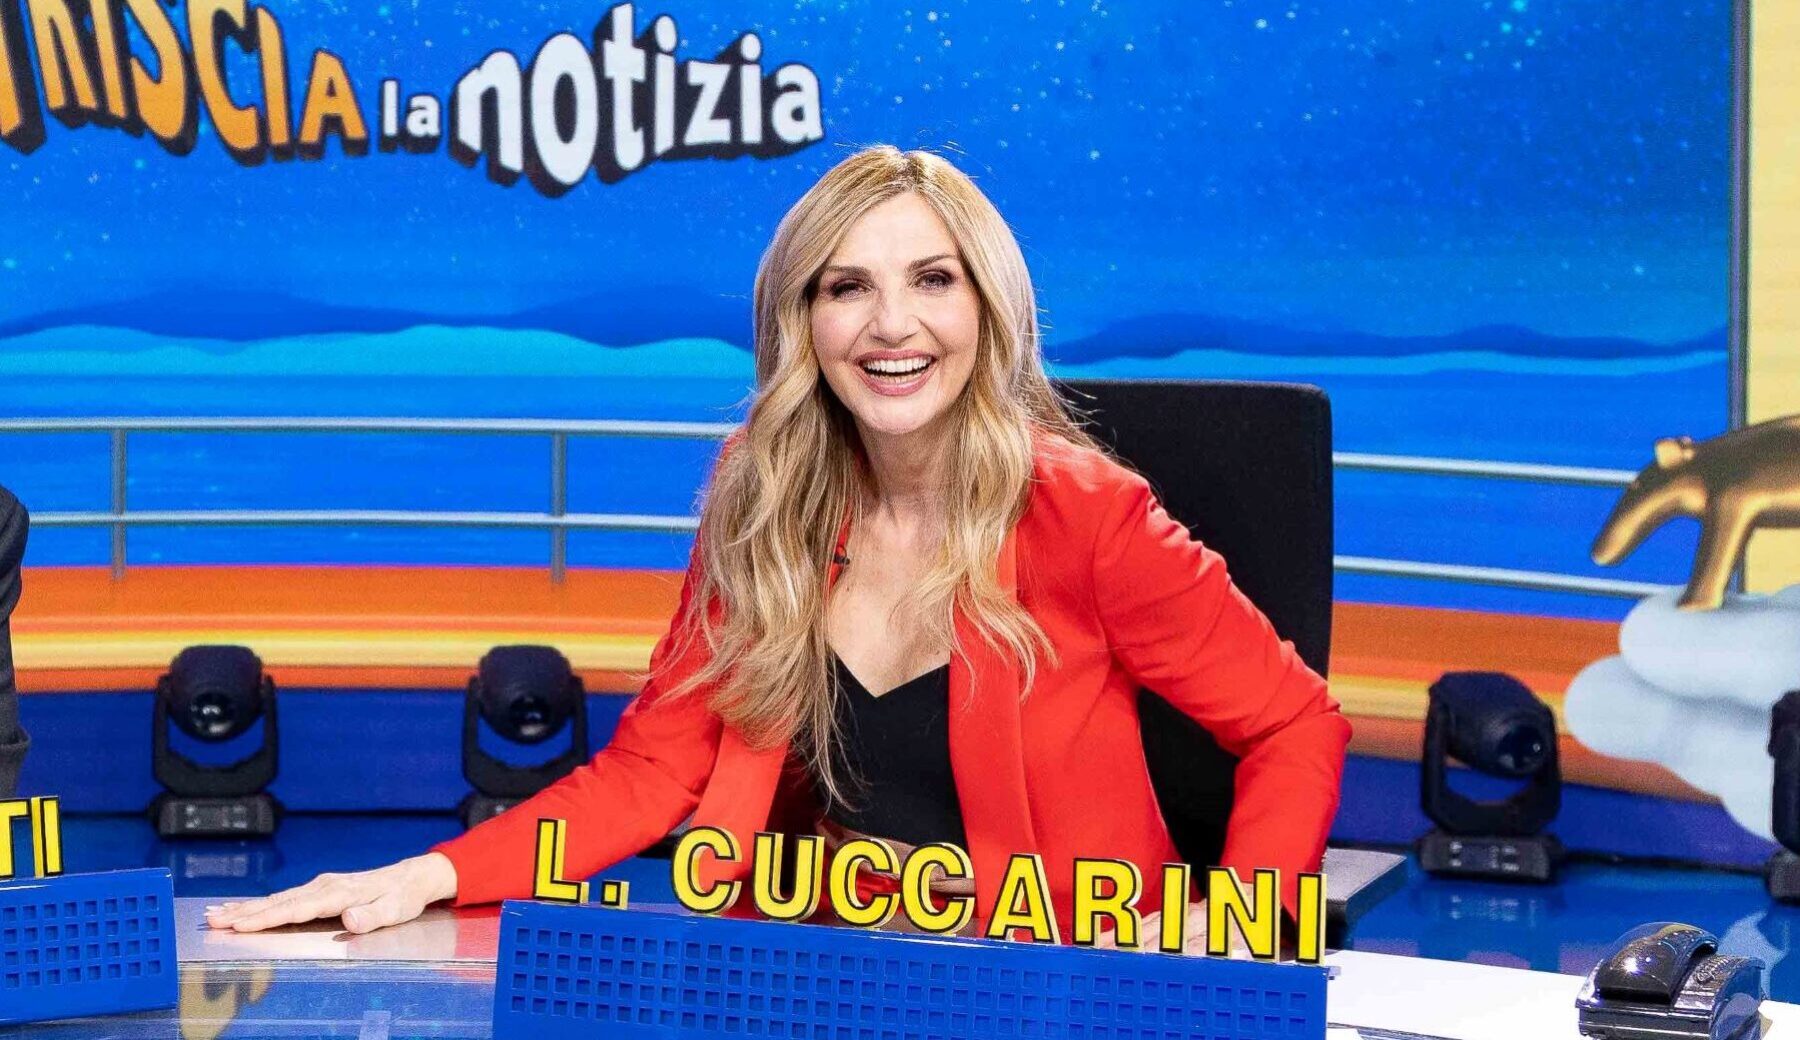 Lorella Cuccarini